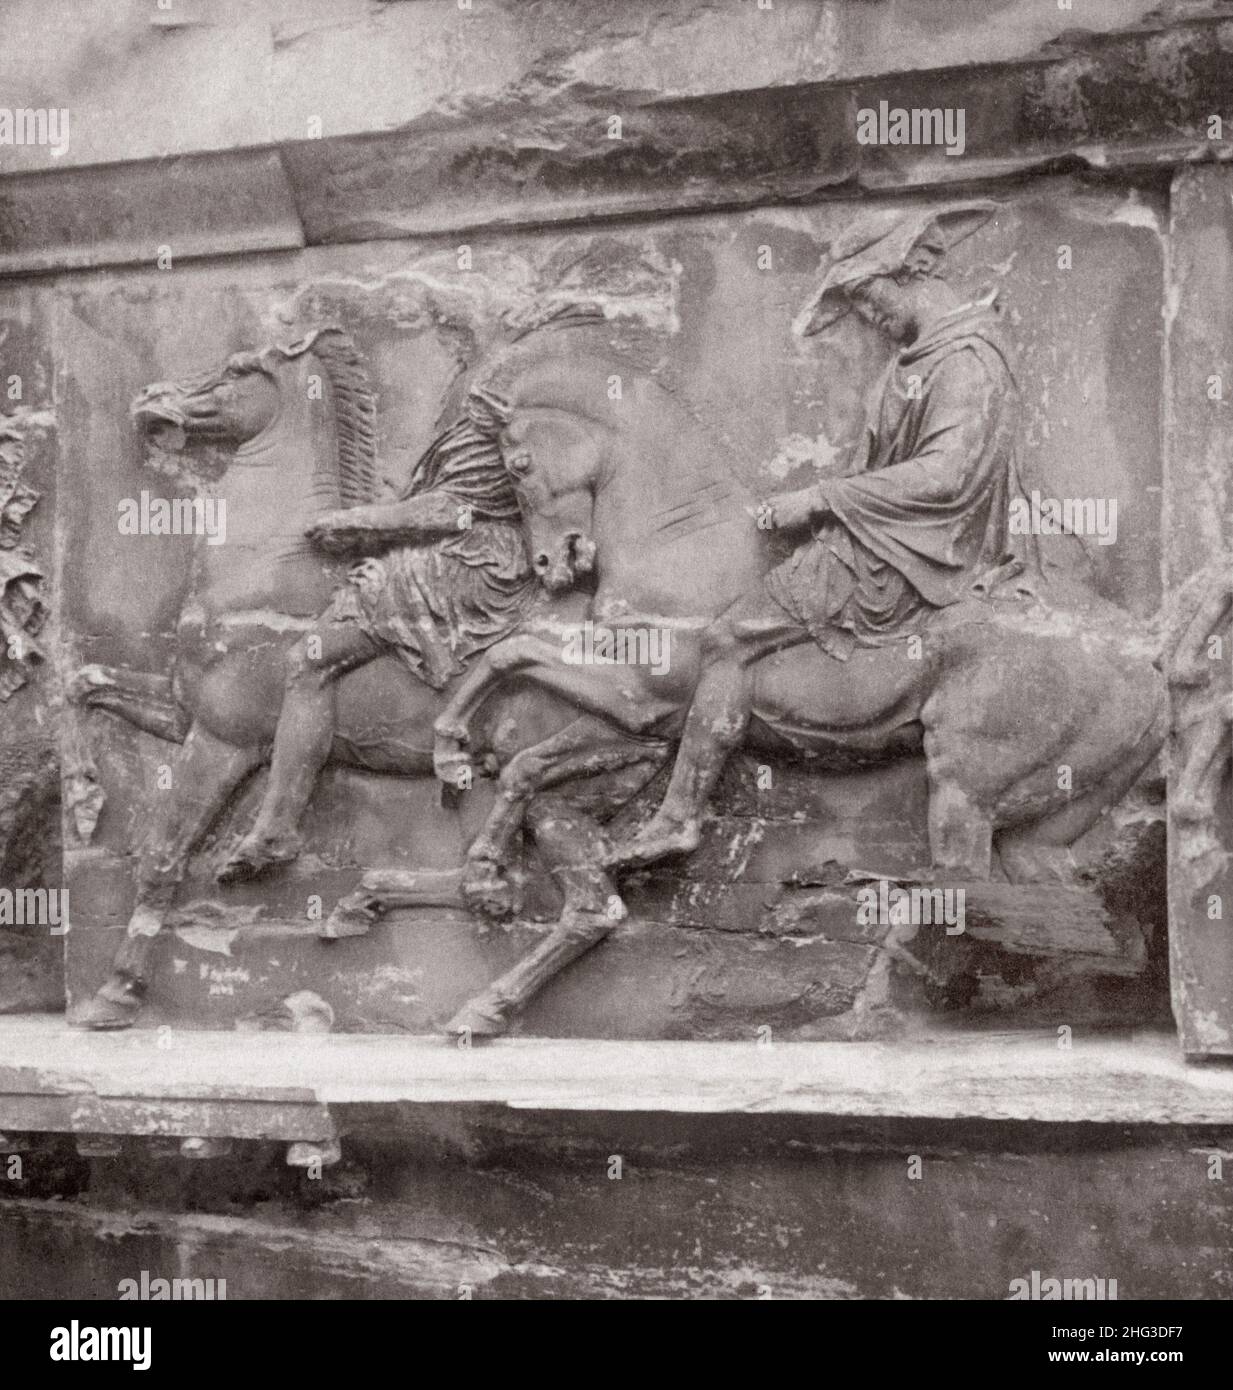 Vintage-Foto von Reitern in Prozession, Teil des Frieses von Phidias noch auf W. Wand von Parthenon, Athen. 1900s Stockfoto